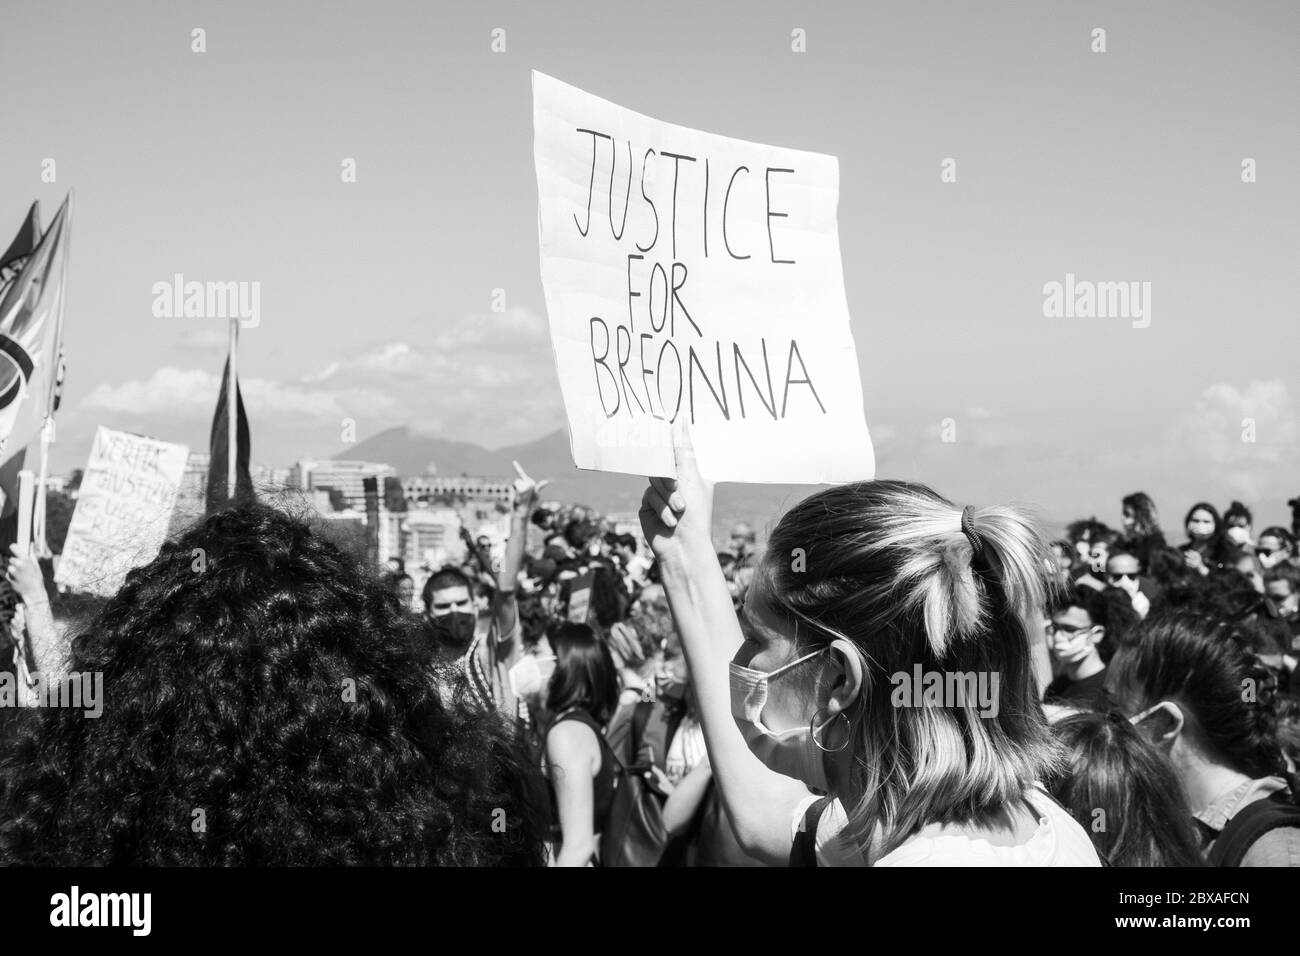 Black Live Matters Napoli Italia 2020 Foto Stock